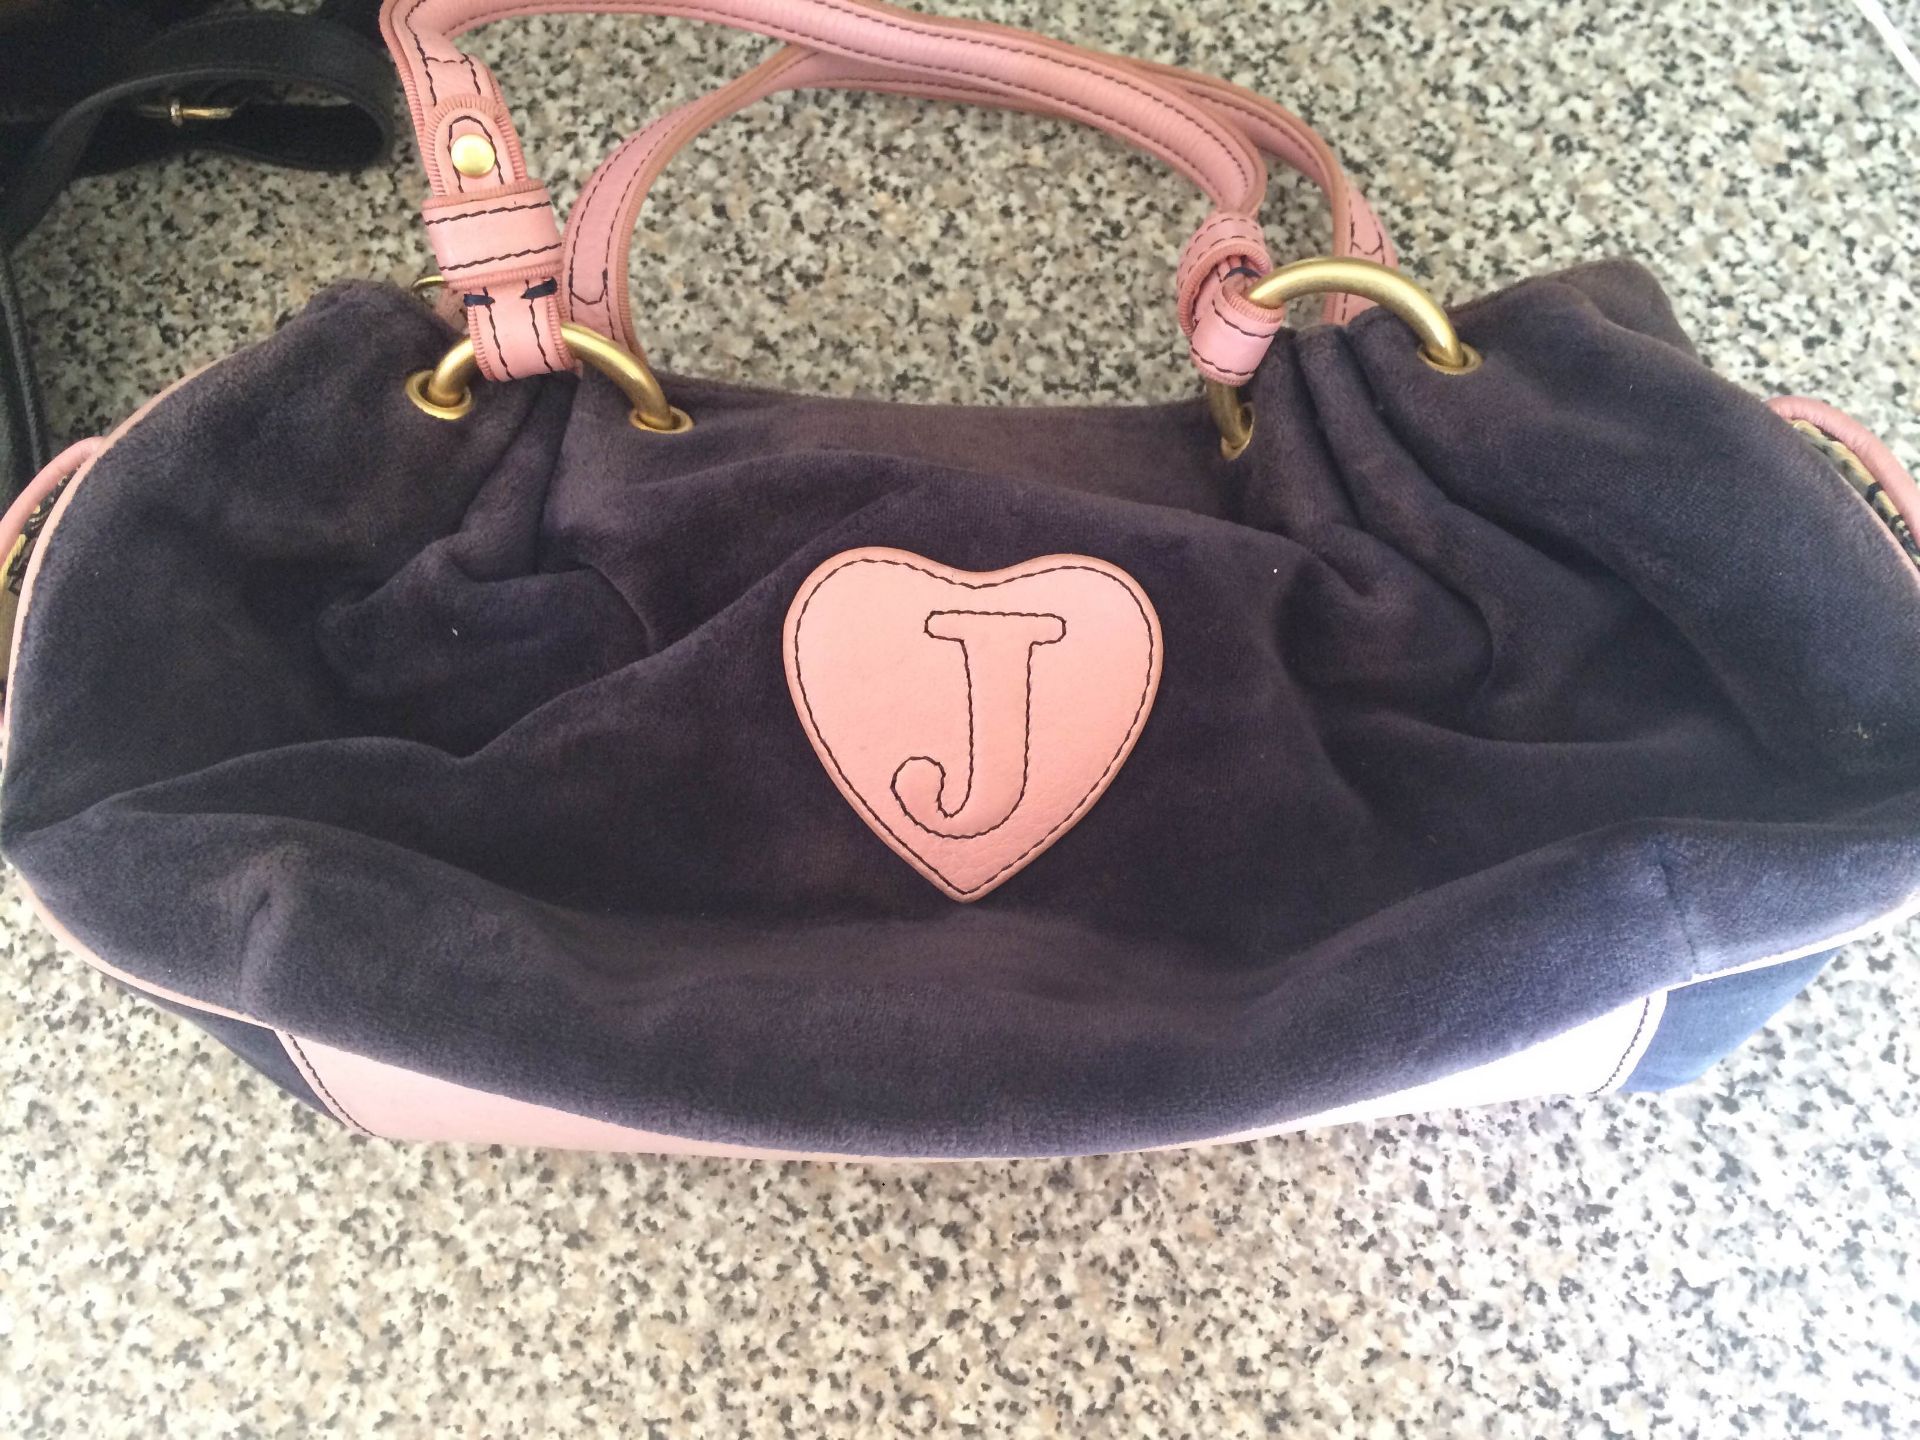 genuine Juicy bag - Image 2 of 3